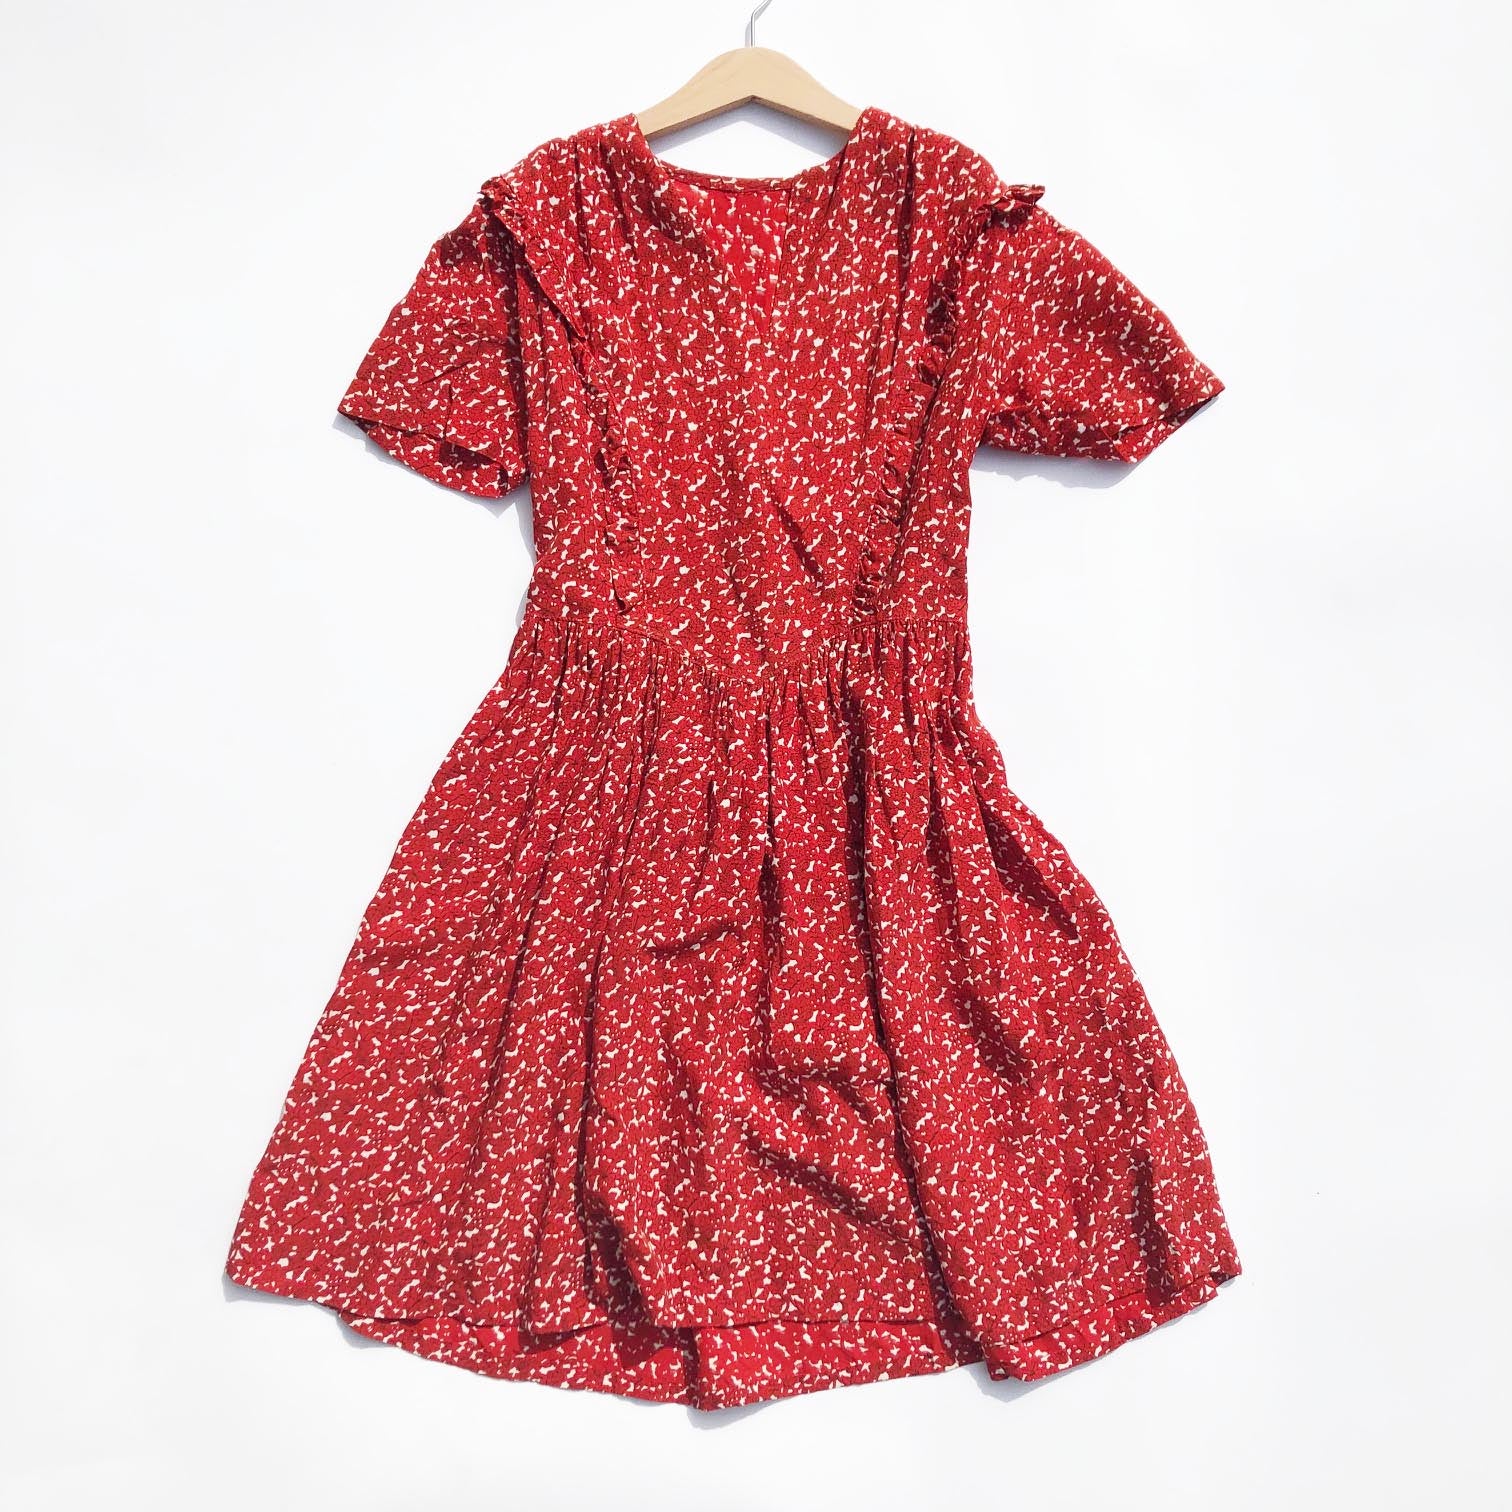 Stunning 1940's Rayon Print dress size 10-12